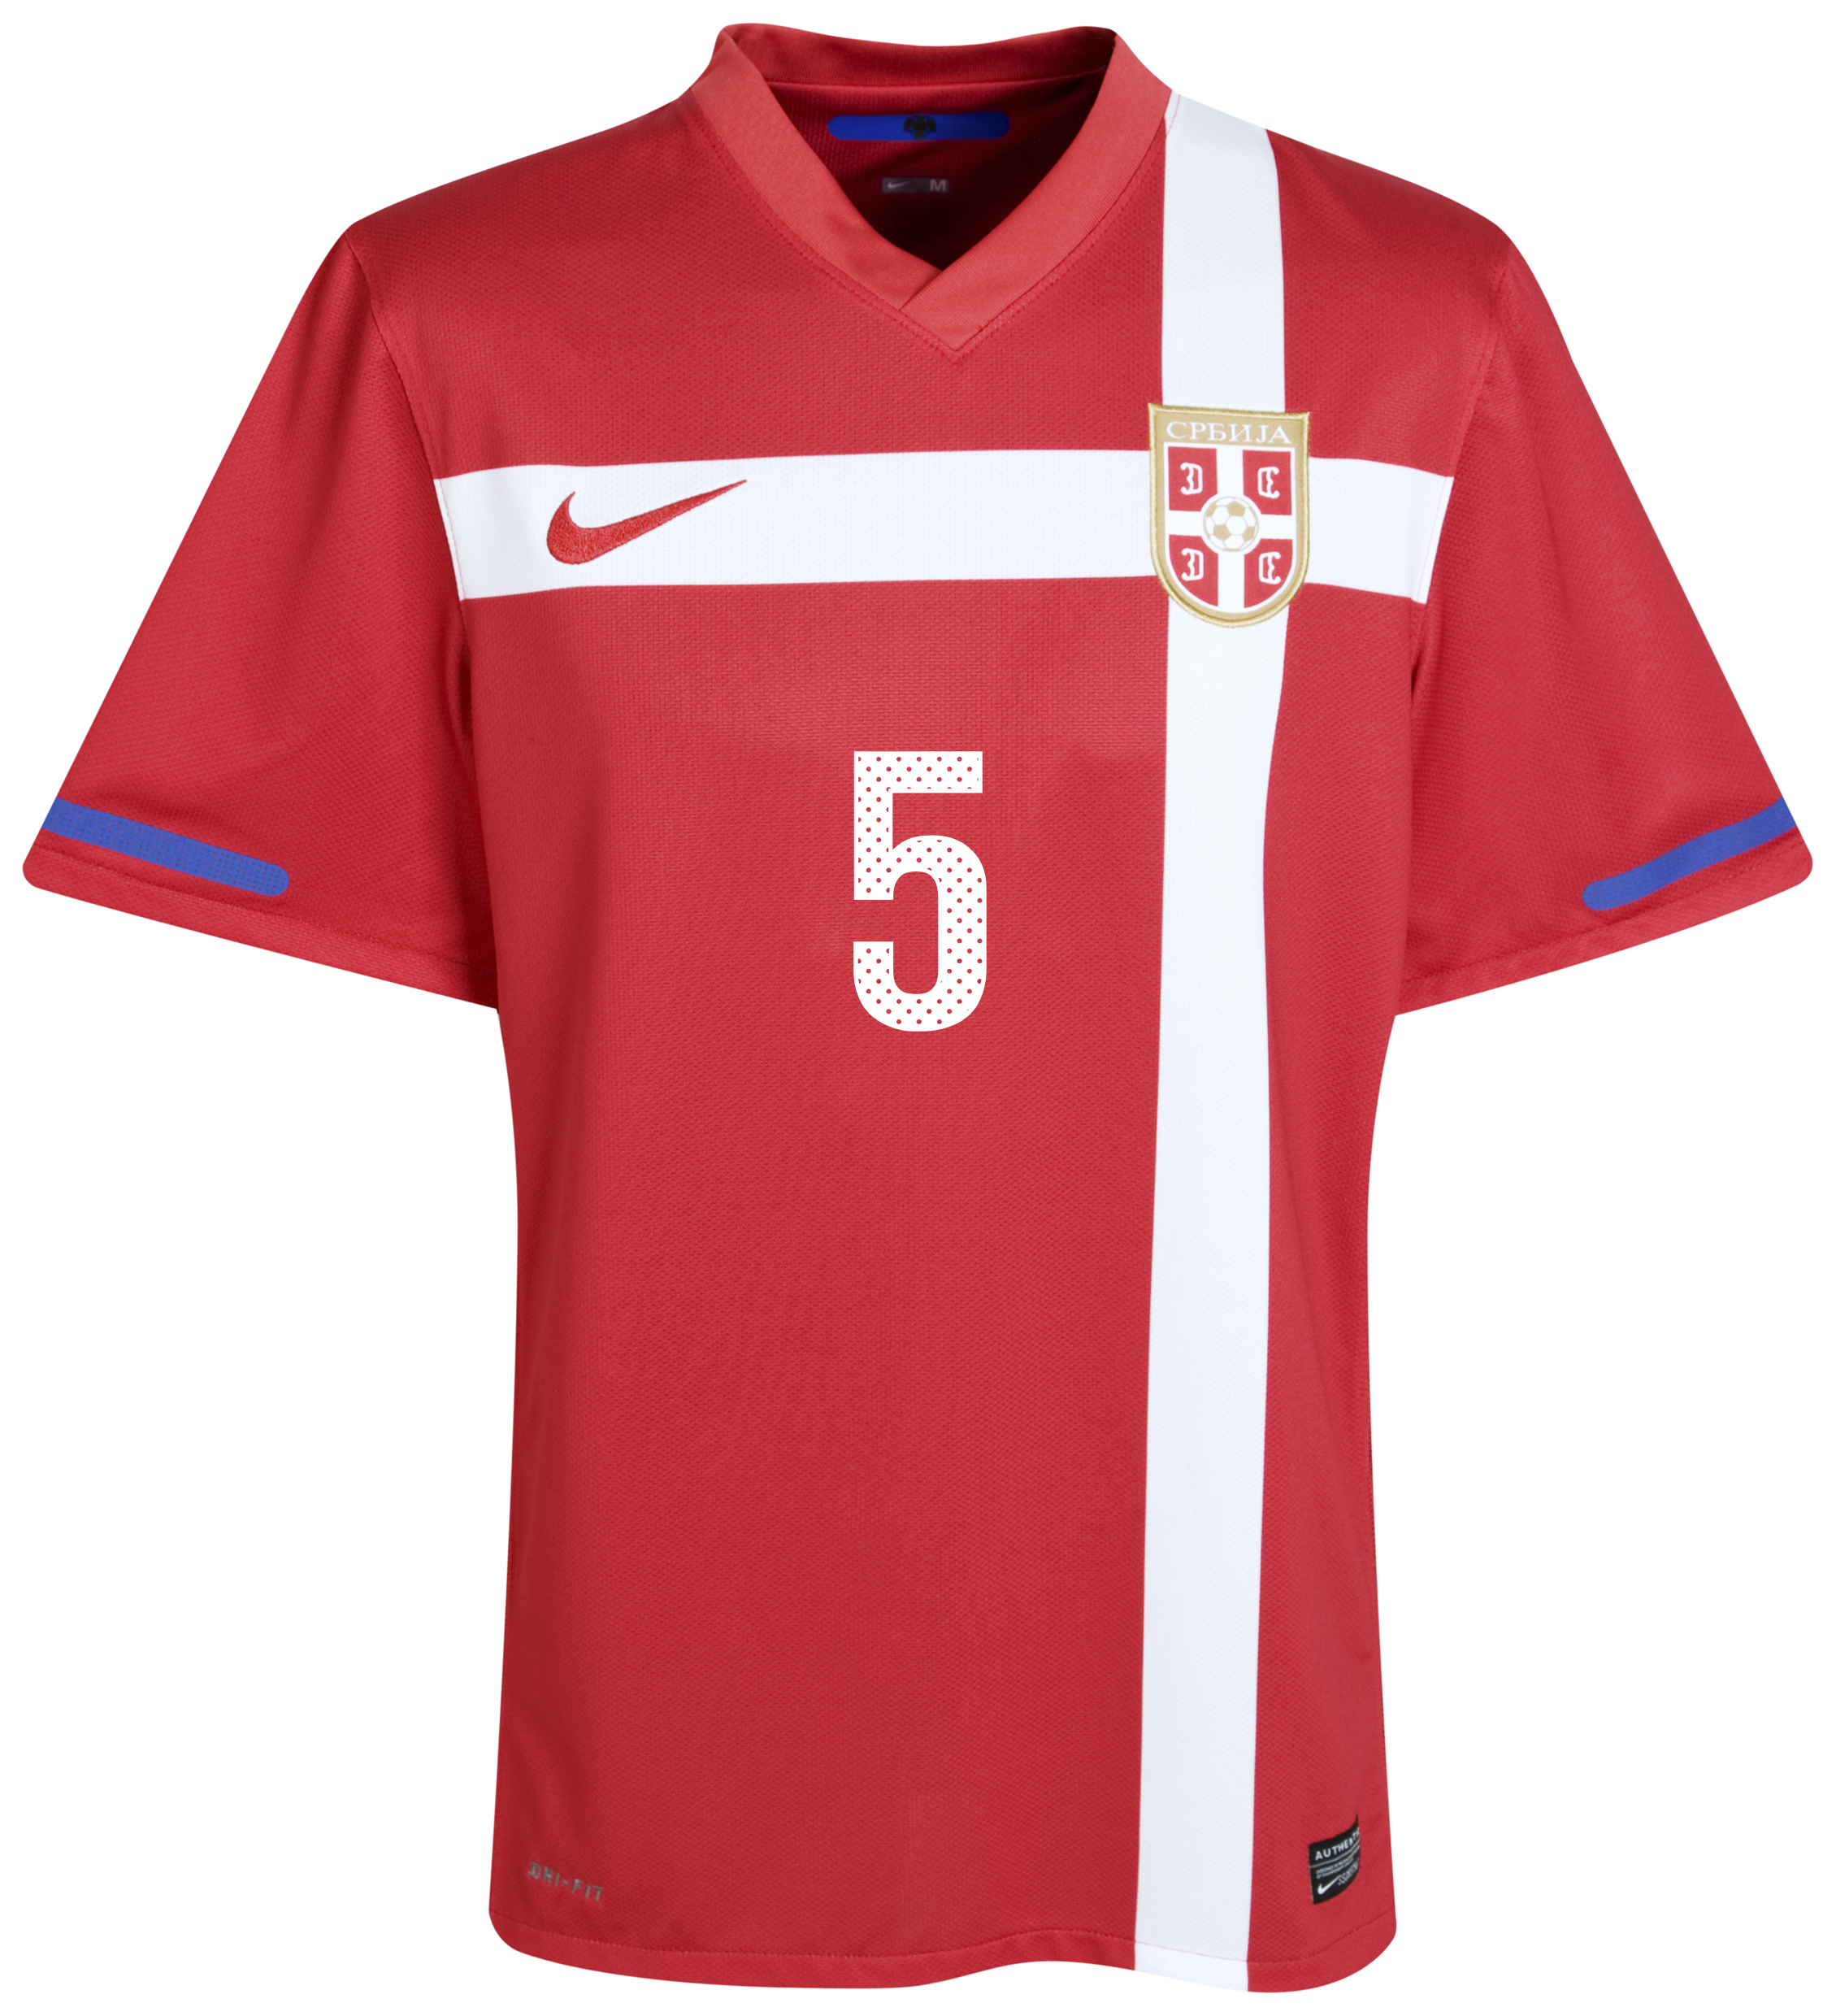 .¸-(_ (قمصان جميع المنتخبات لكأس العالم 2010) _)-,. Kb-71658a